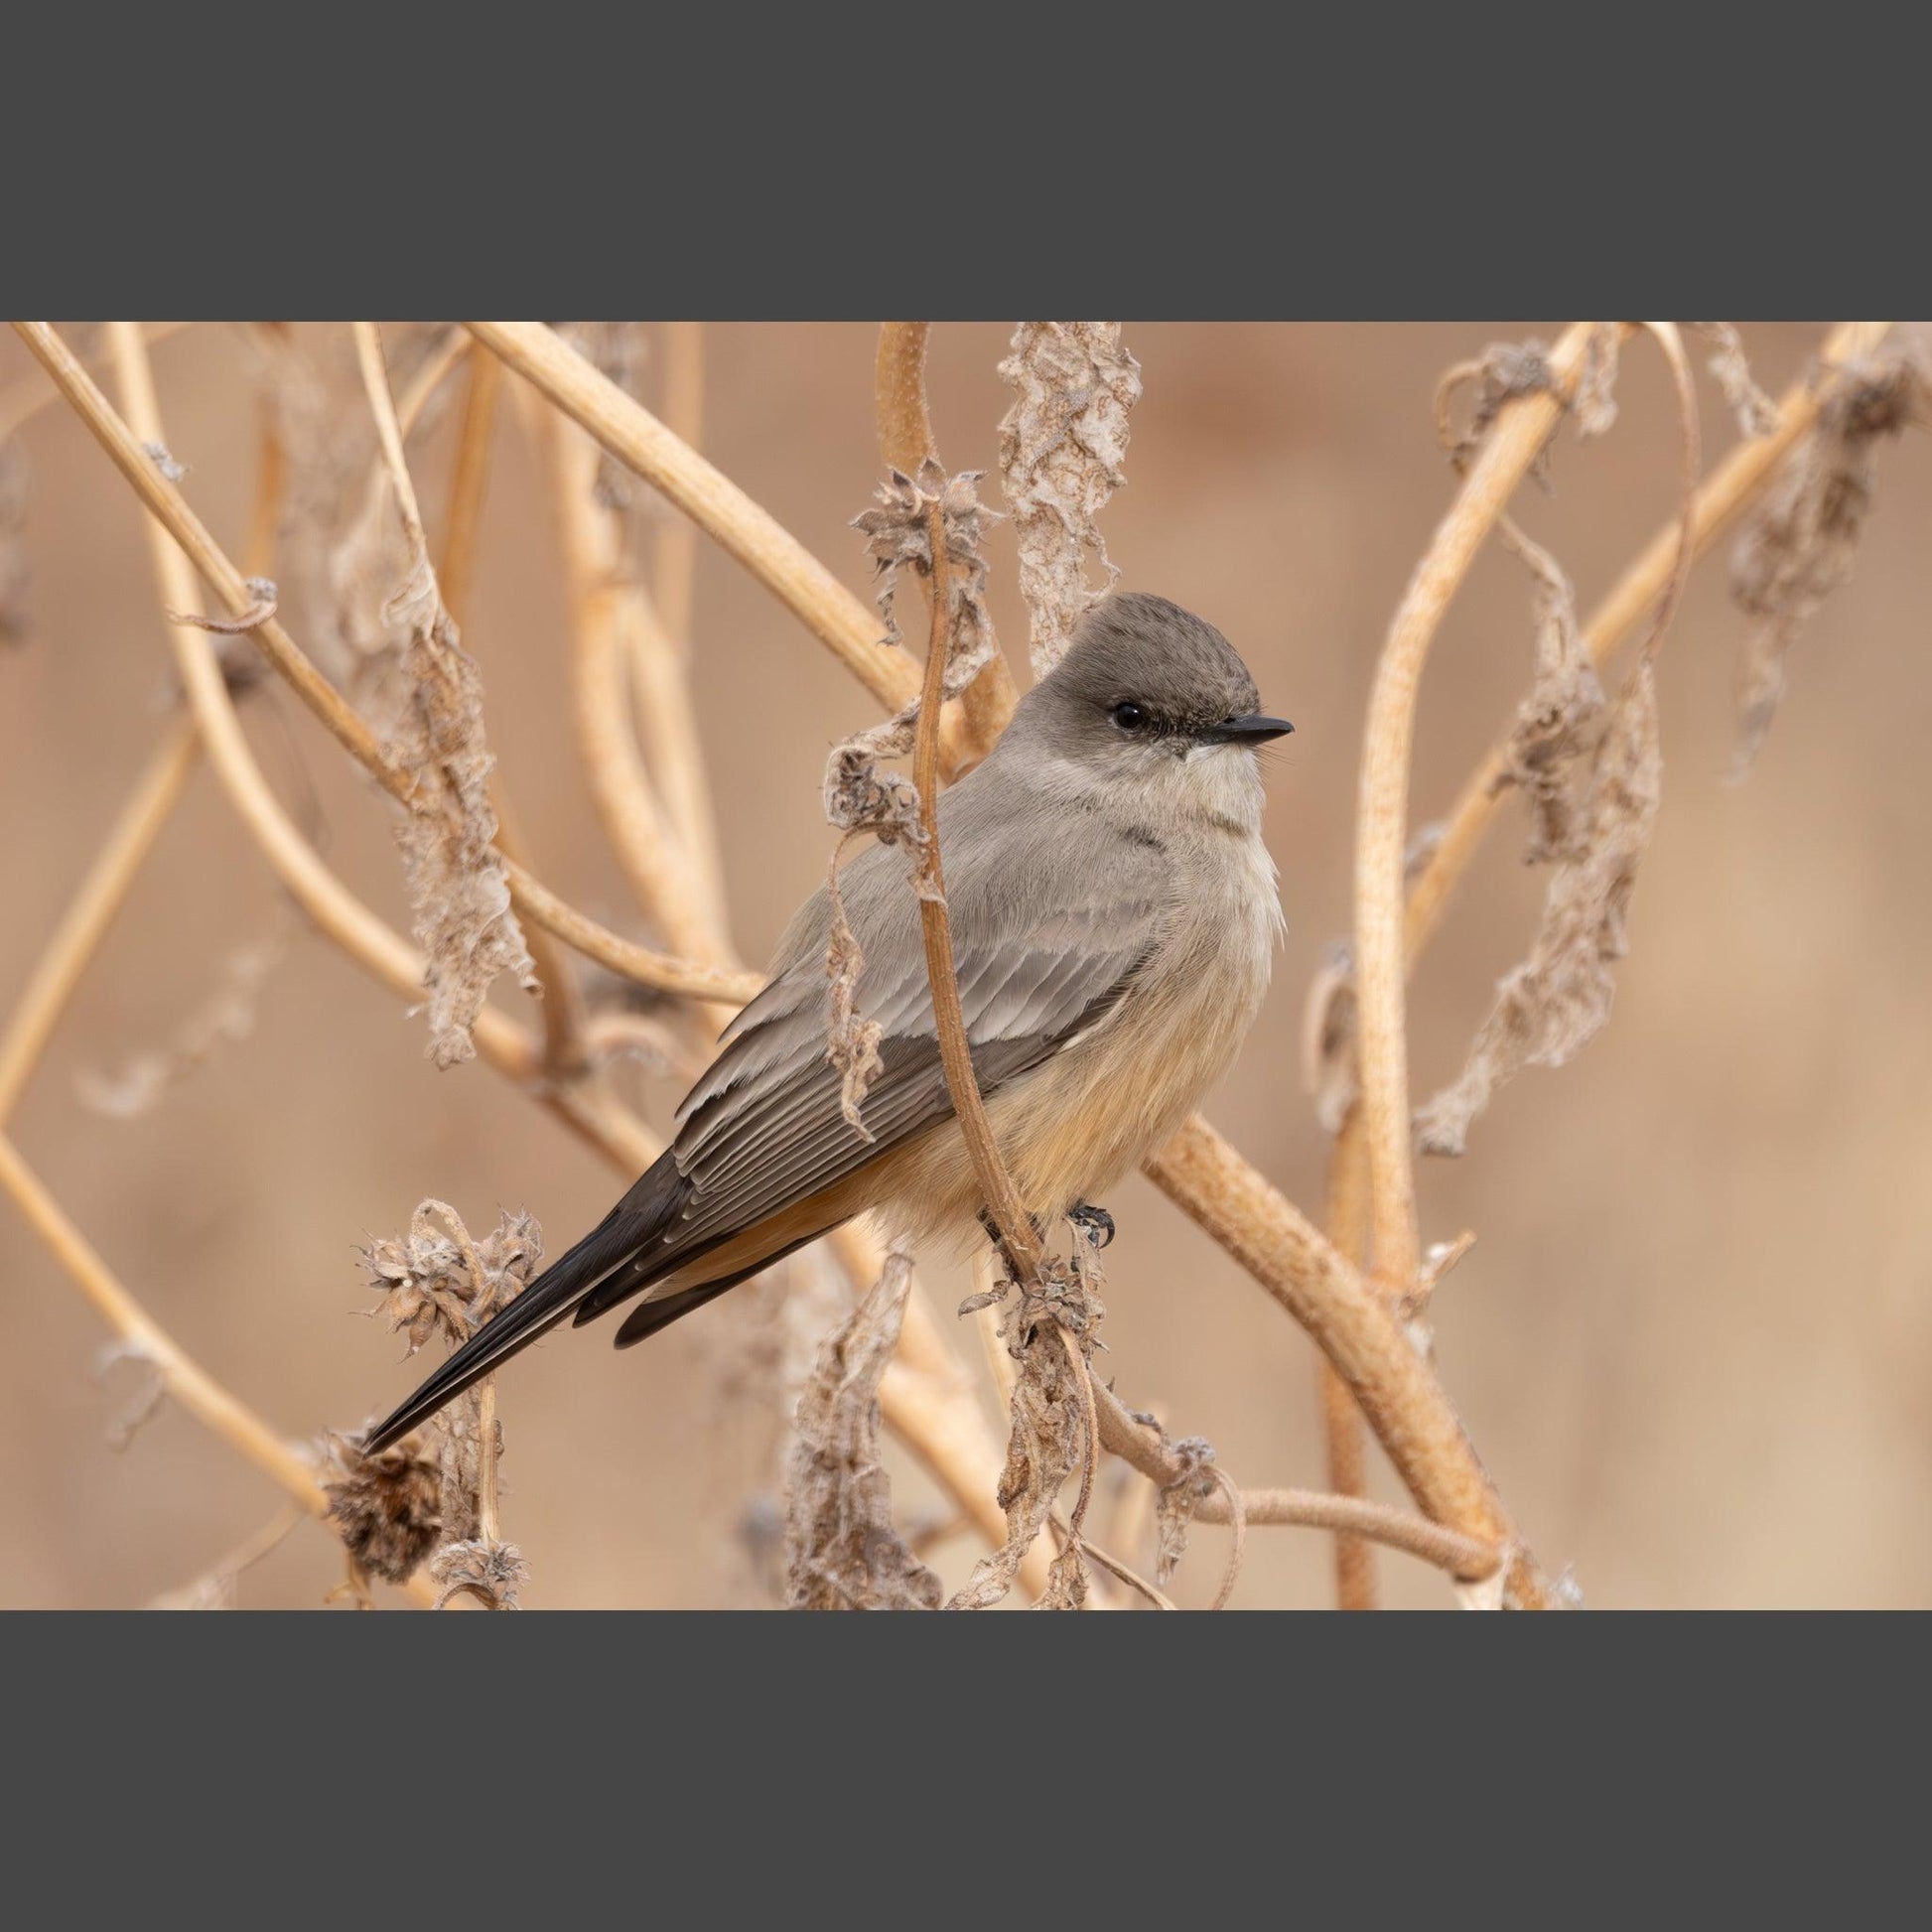 A Say's Phoebe bird on winter stalks.